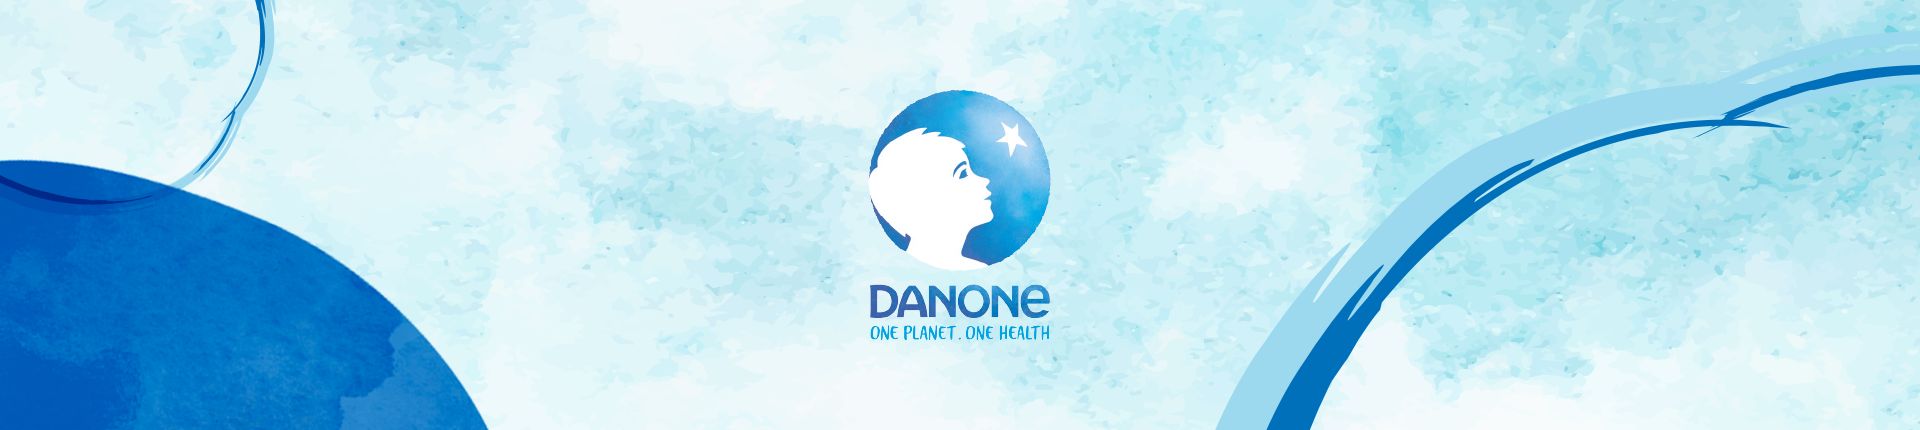 Danone Careers TR Sosyal Medya Yönetimi ve Dijital İşveren Markası